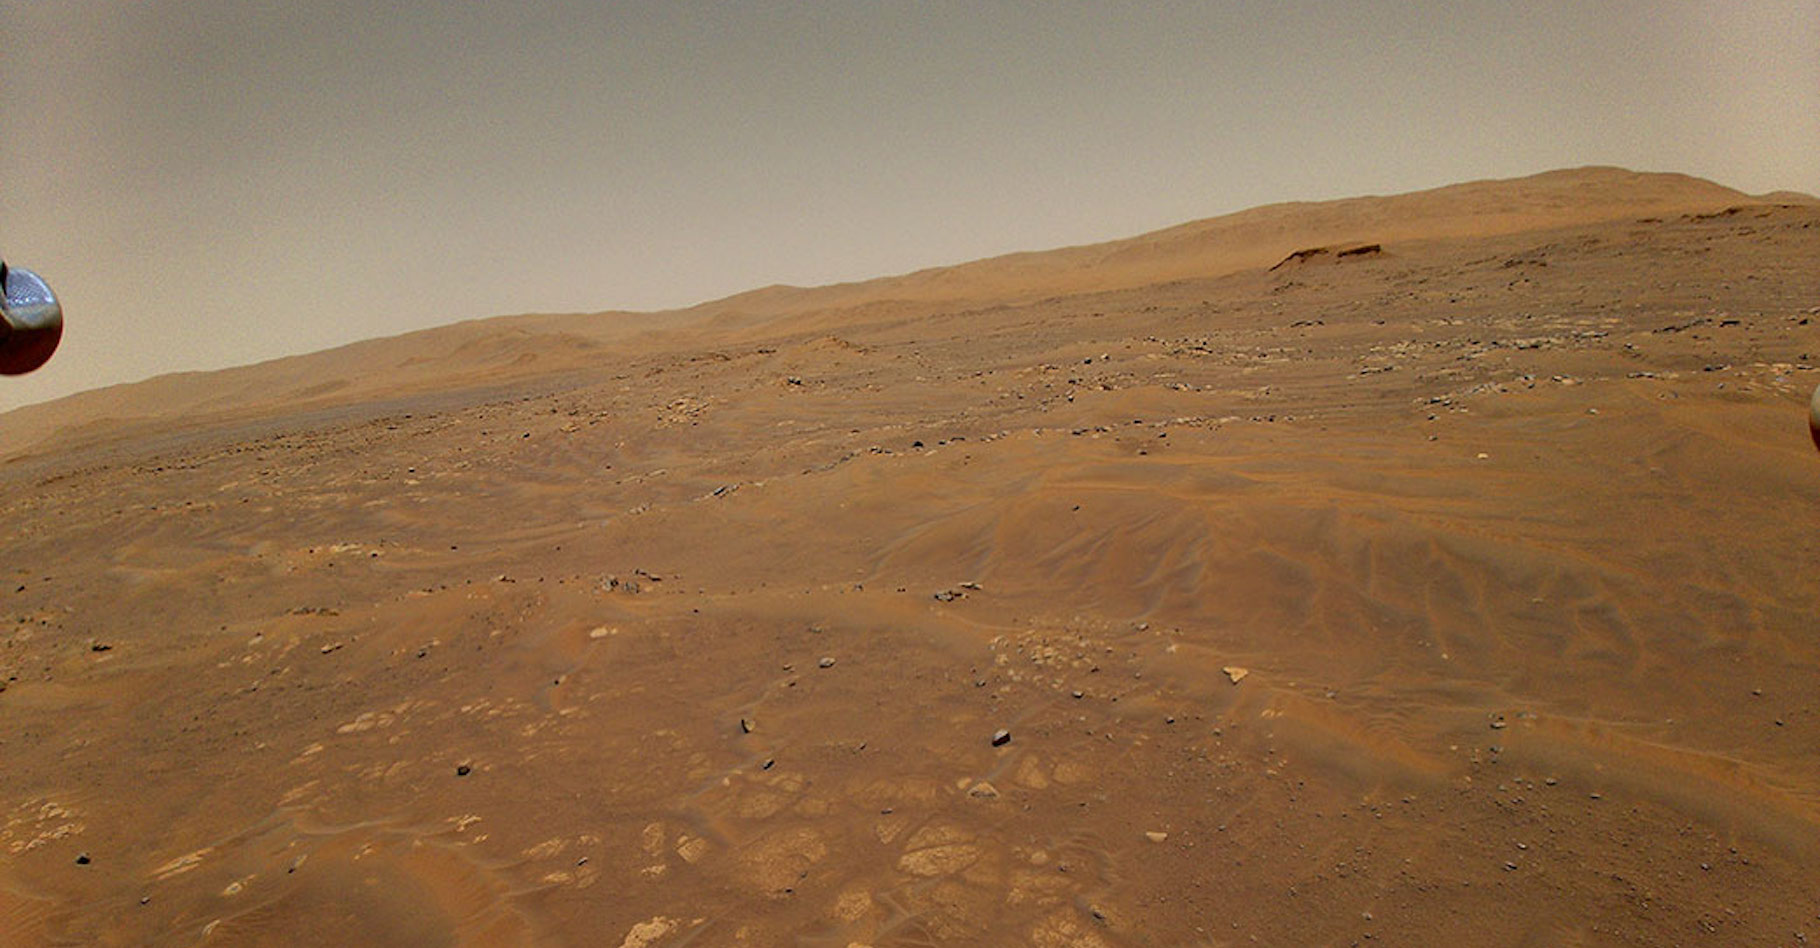 Cette image a été prise par Ingenuity, alors que l’hélicoptère martien volait à une altitude d’environ 10 mètres. Elle montre la région de « Séítah », la première qui sera explorée par le rover de la Nasa Perseverance au cours de sa mission scientifique sur Mars. © Nasa, JPL-Caltech